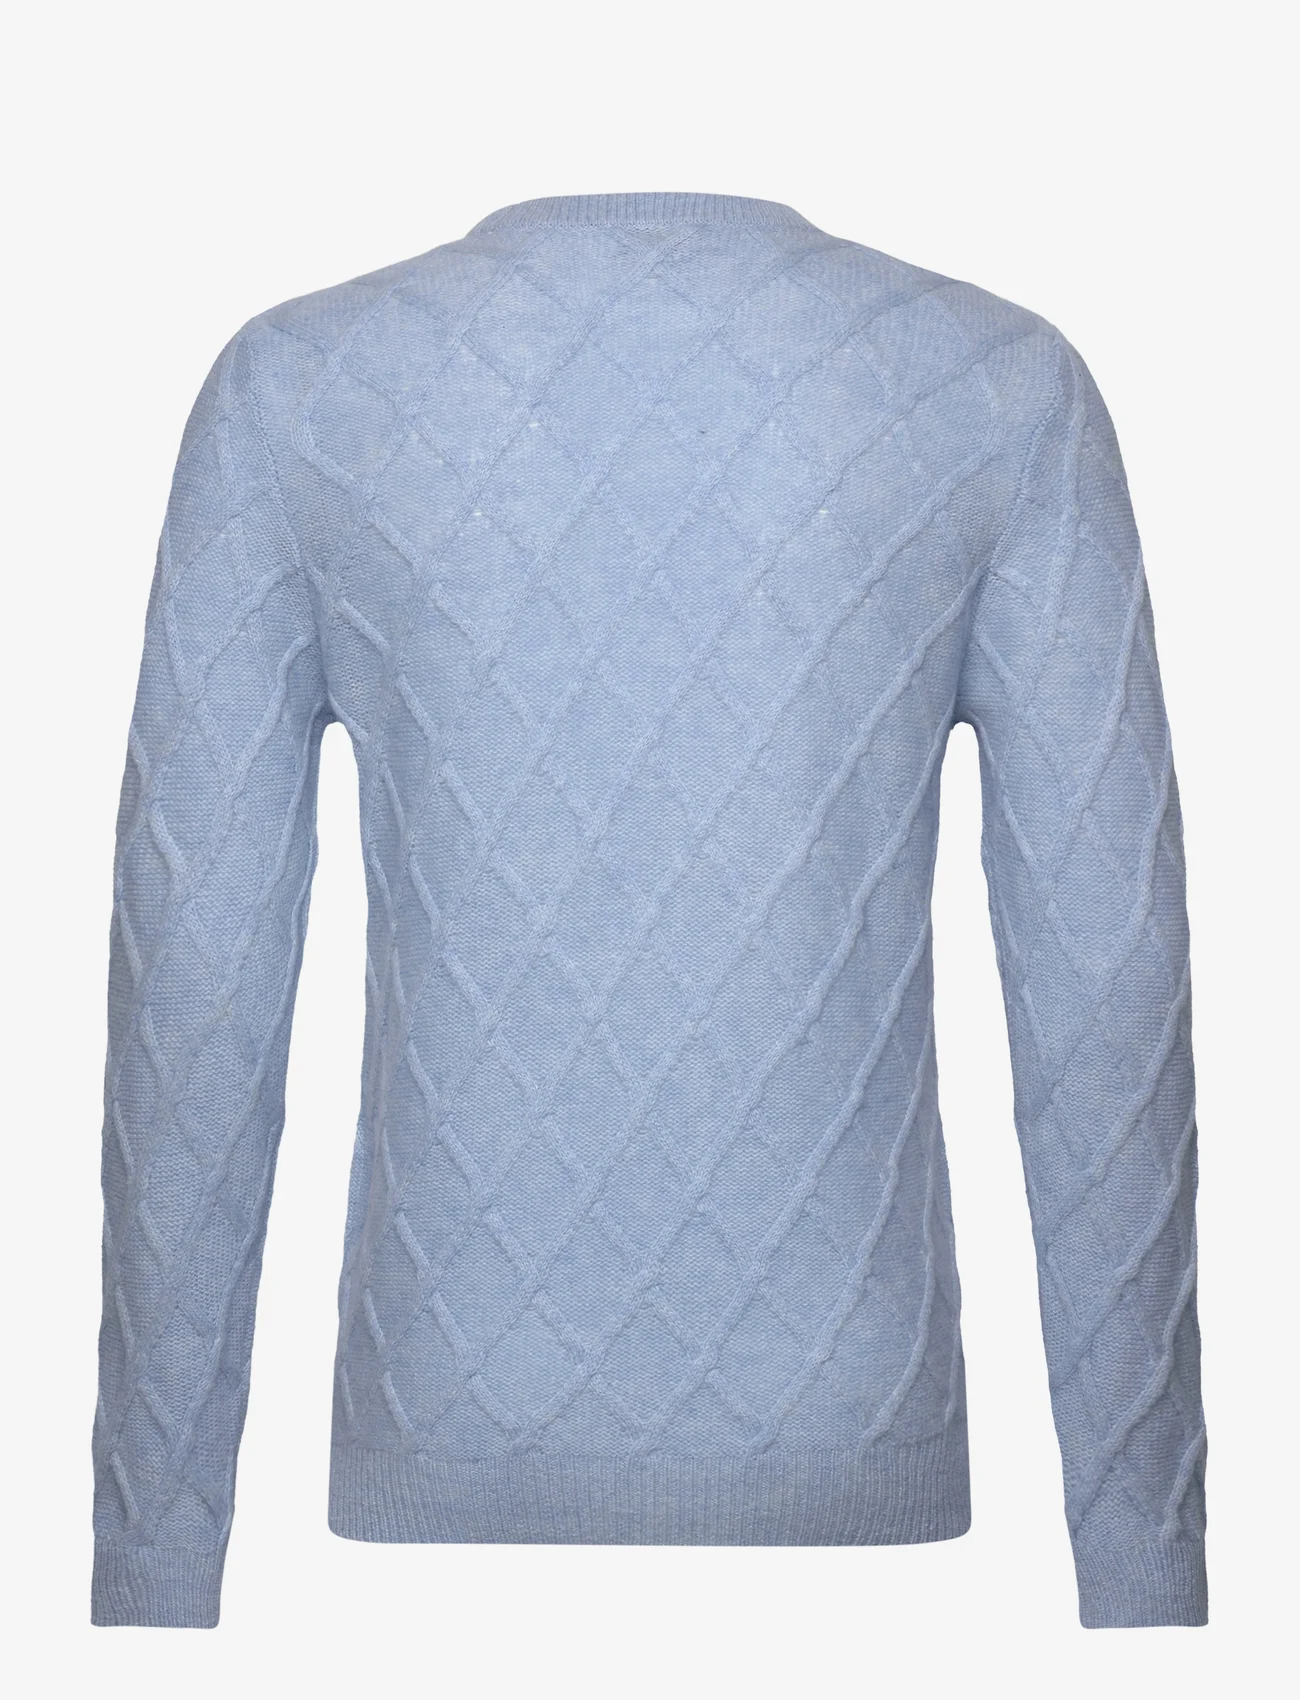 Davida Cashmere - Man O-neck Cable Sweater - rundhals - blue fog - 1